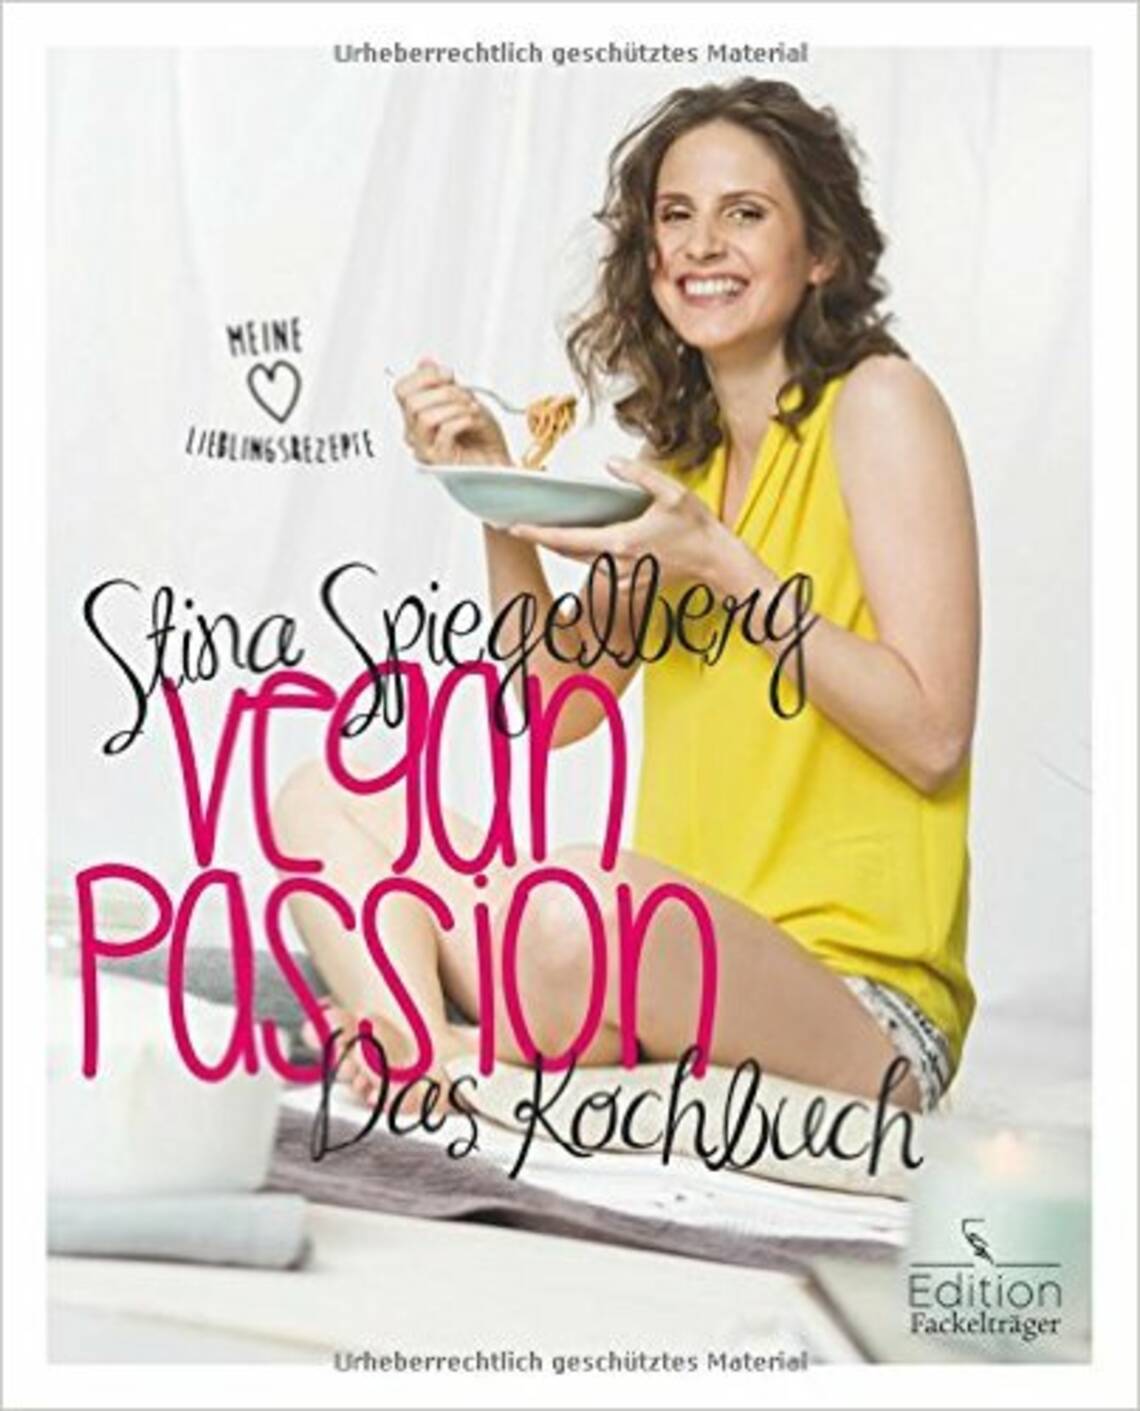 Veganpassion - Das Kochbuch von Stina Spiegelberg